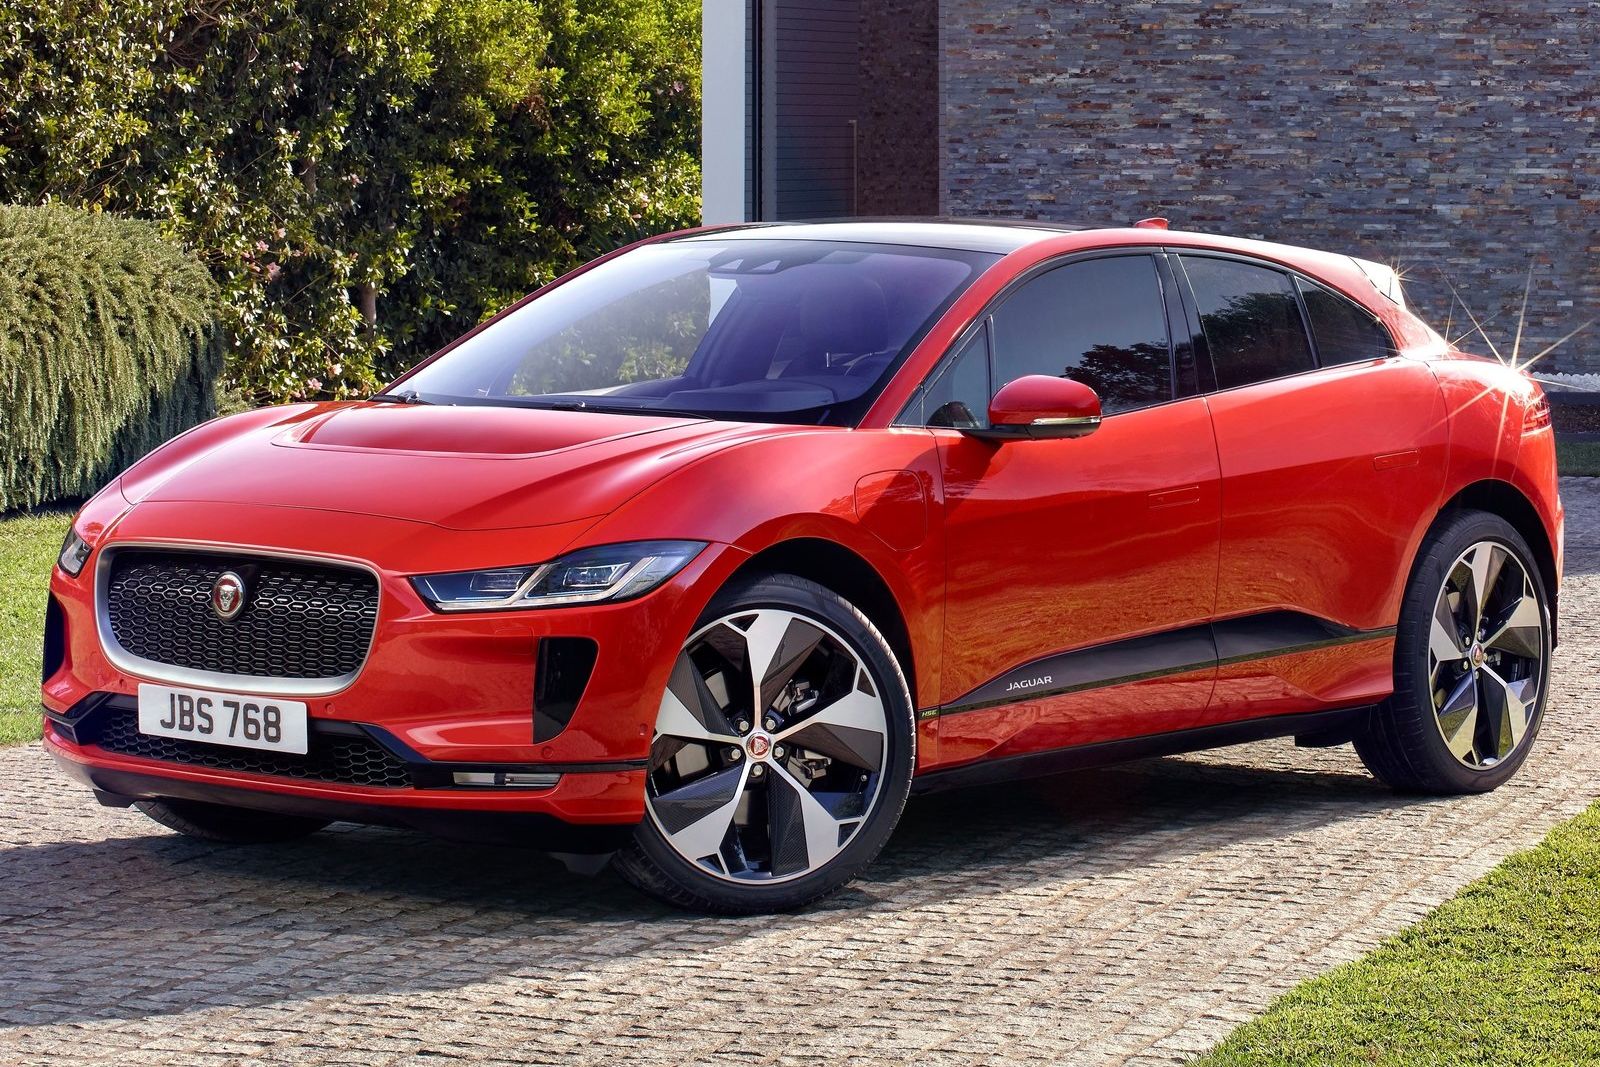 Нов Jaguar чак през 2025 г.